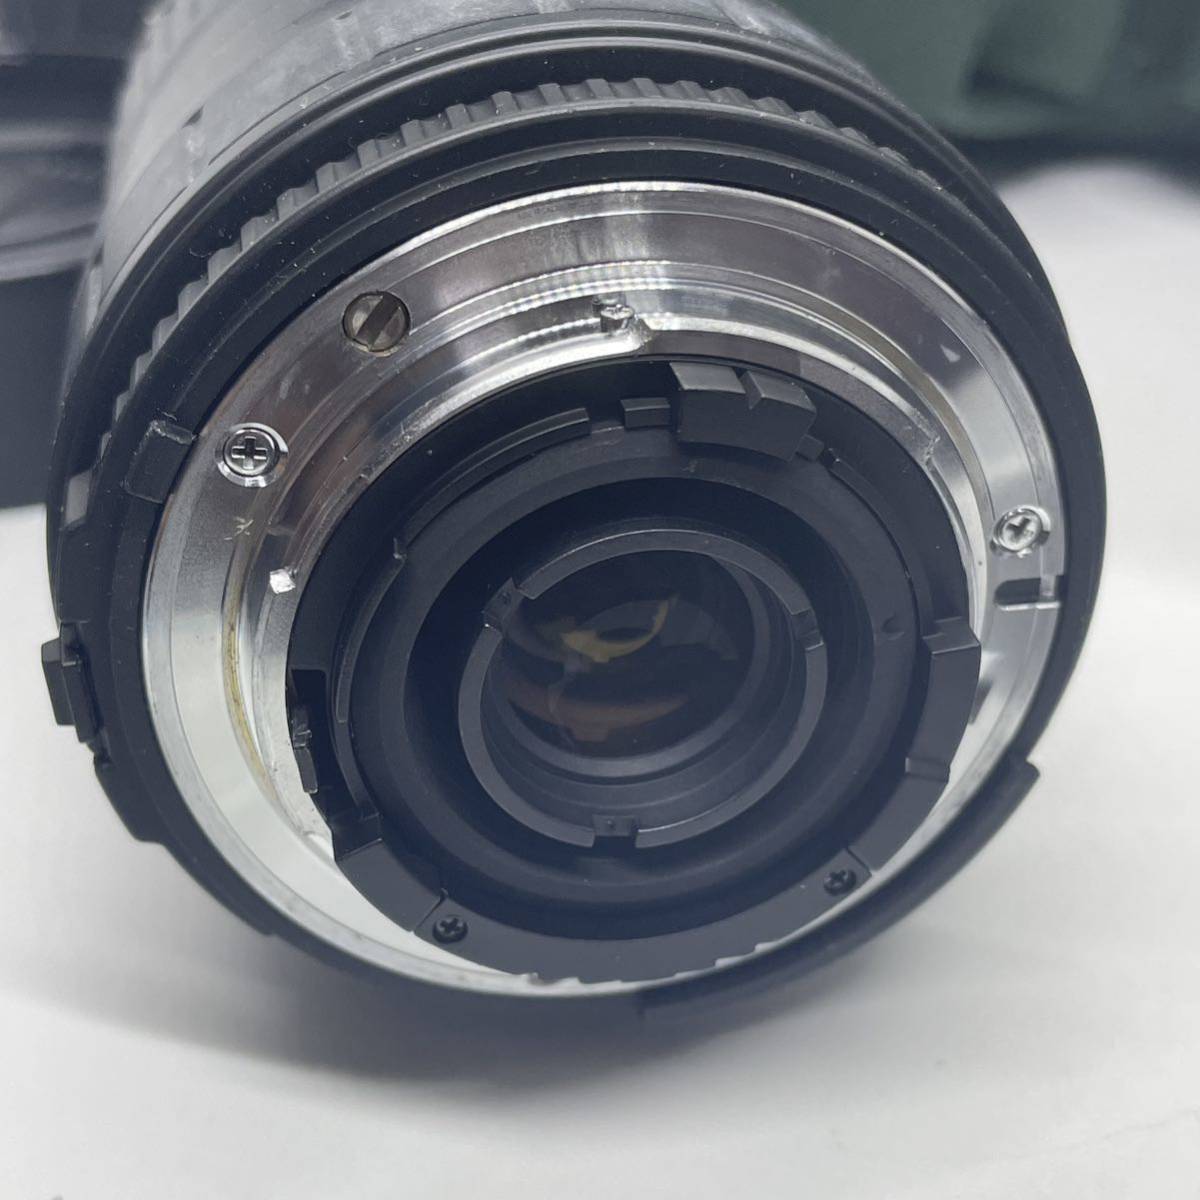 K-1843】Nikon ニコン F50 フィルムカメラ 望遠レンズ SIGMA ZOOM 100